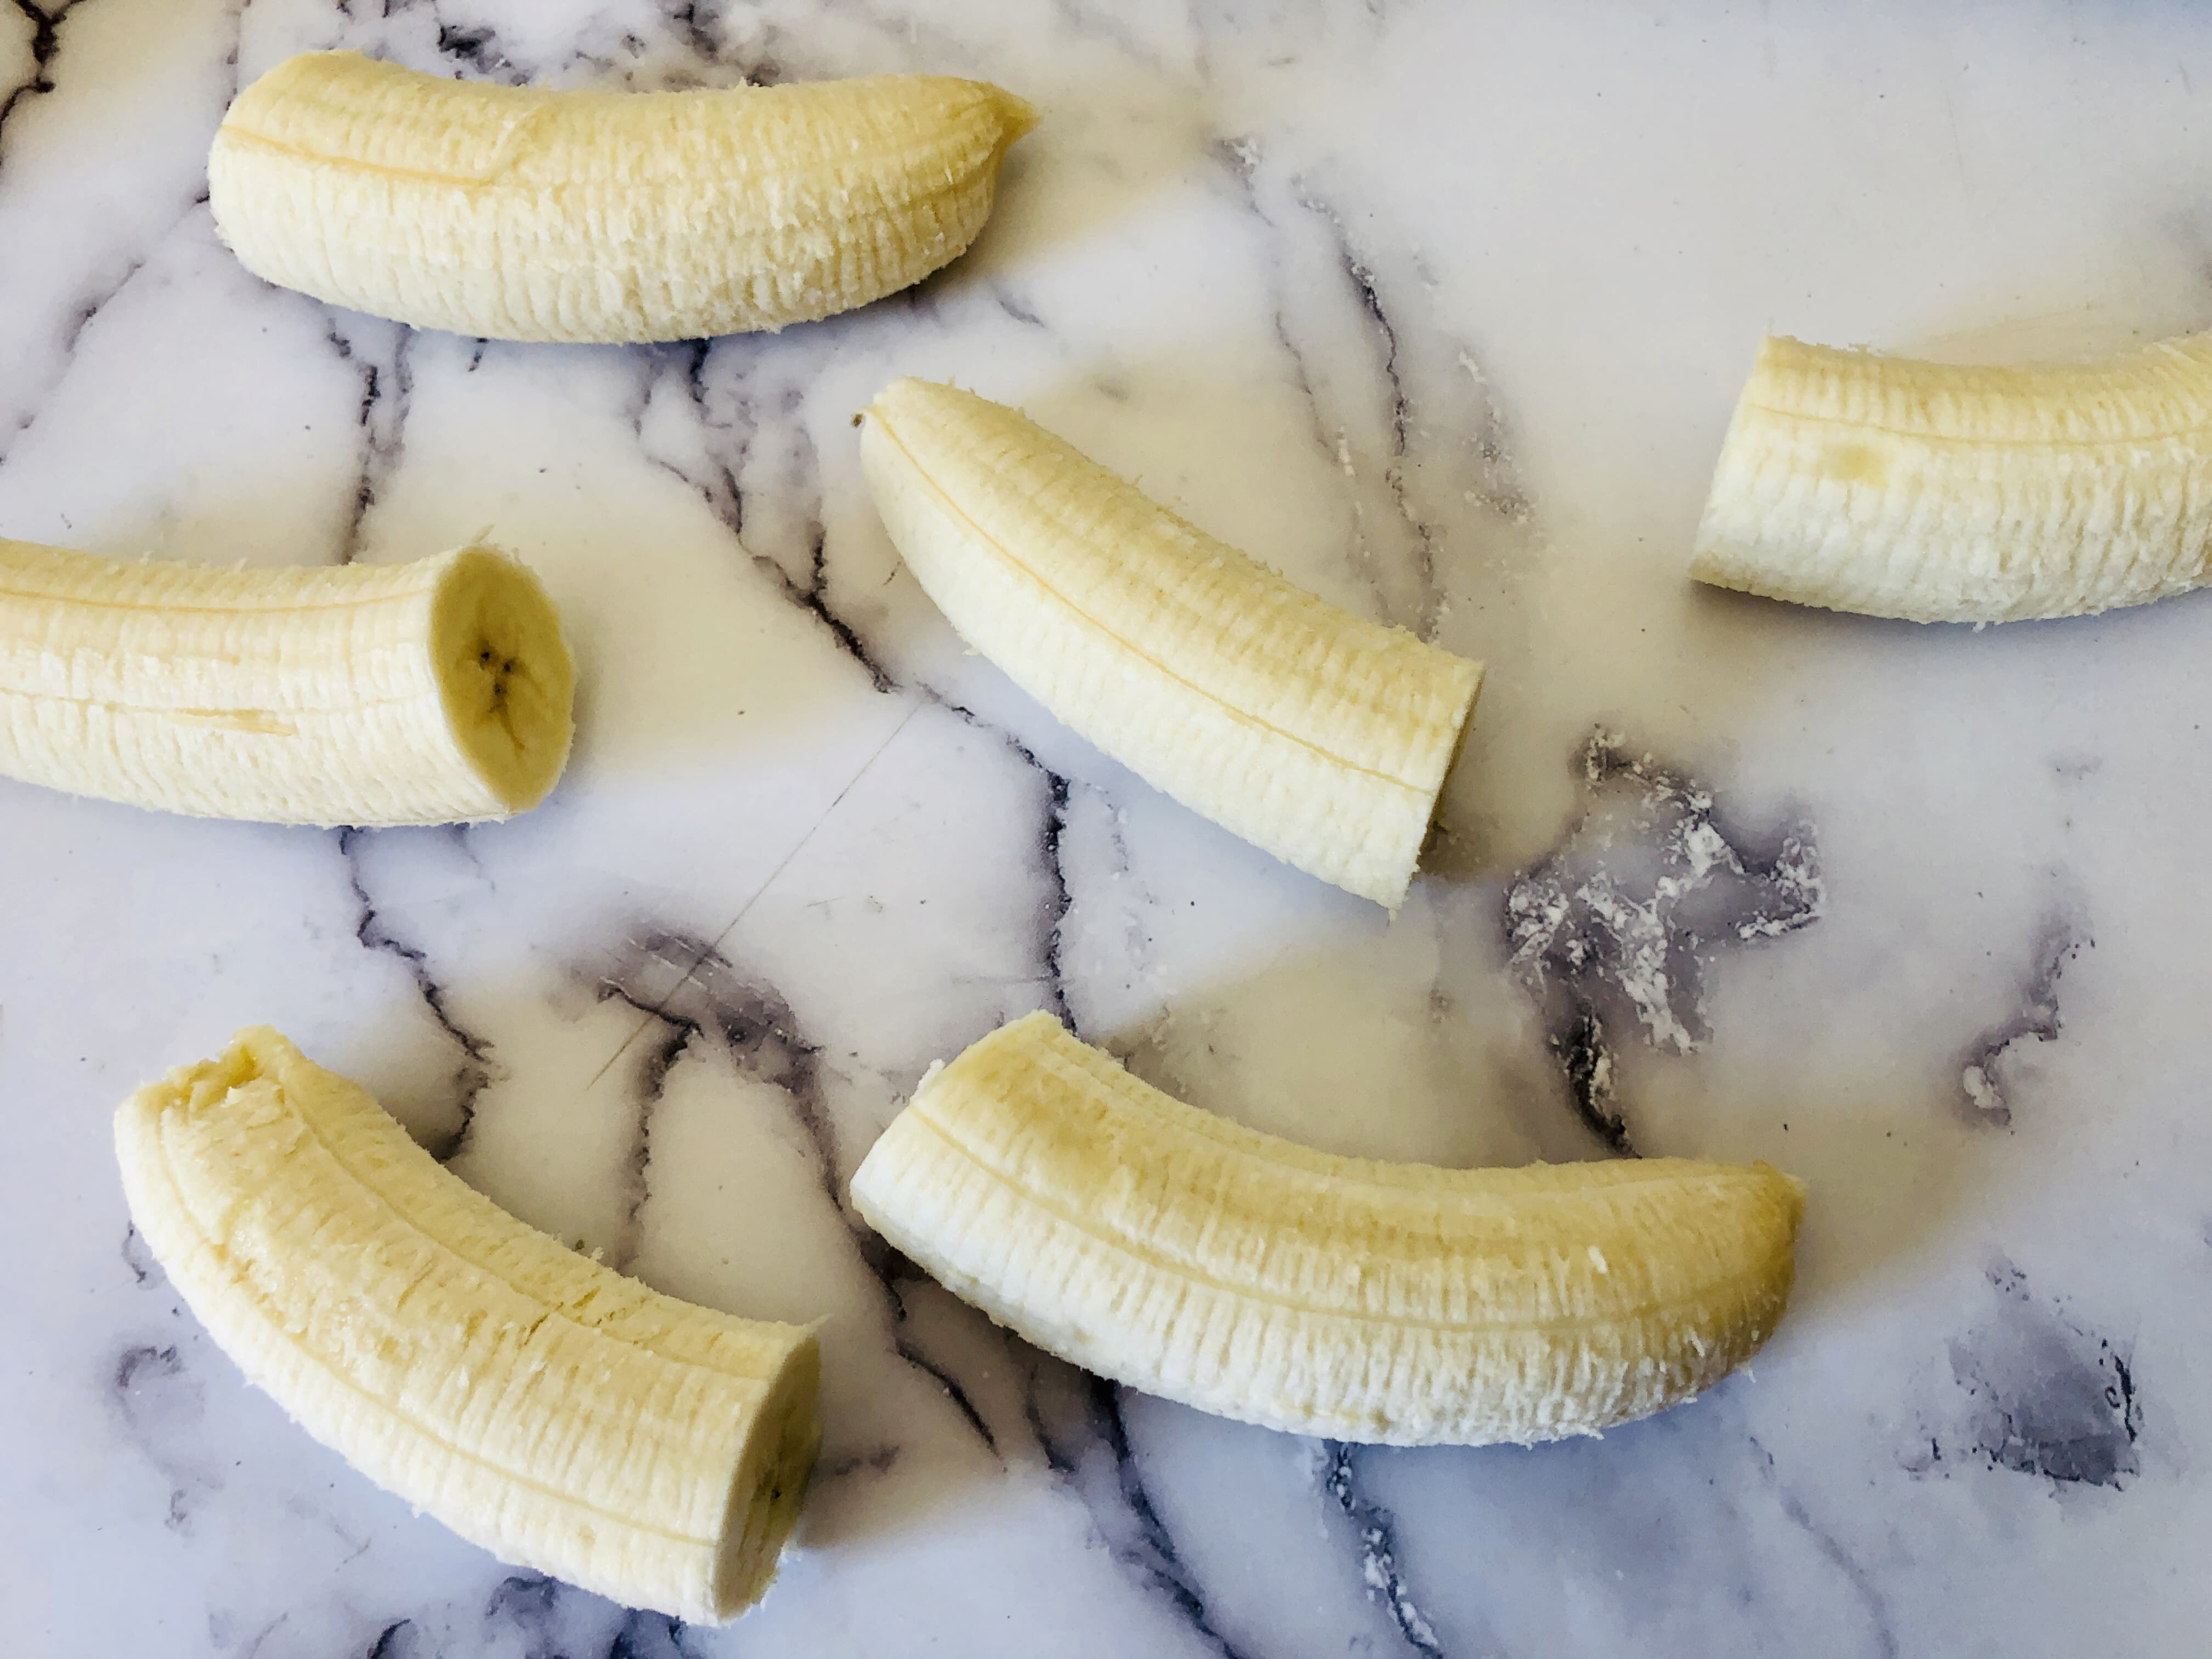 banana cut in half